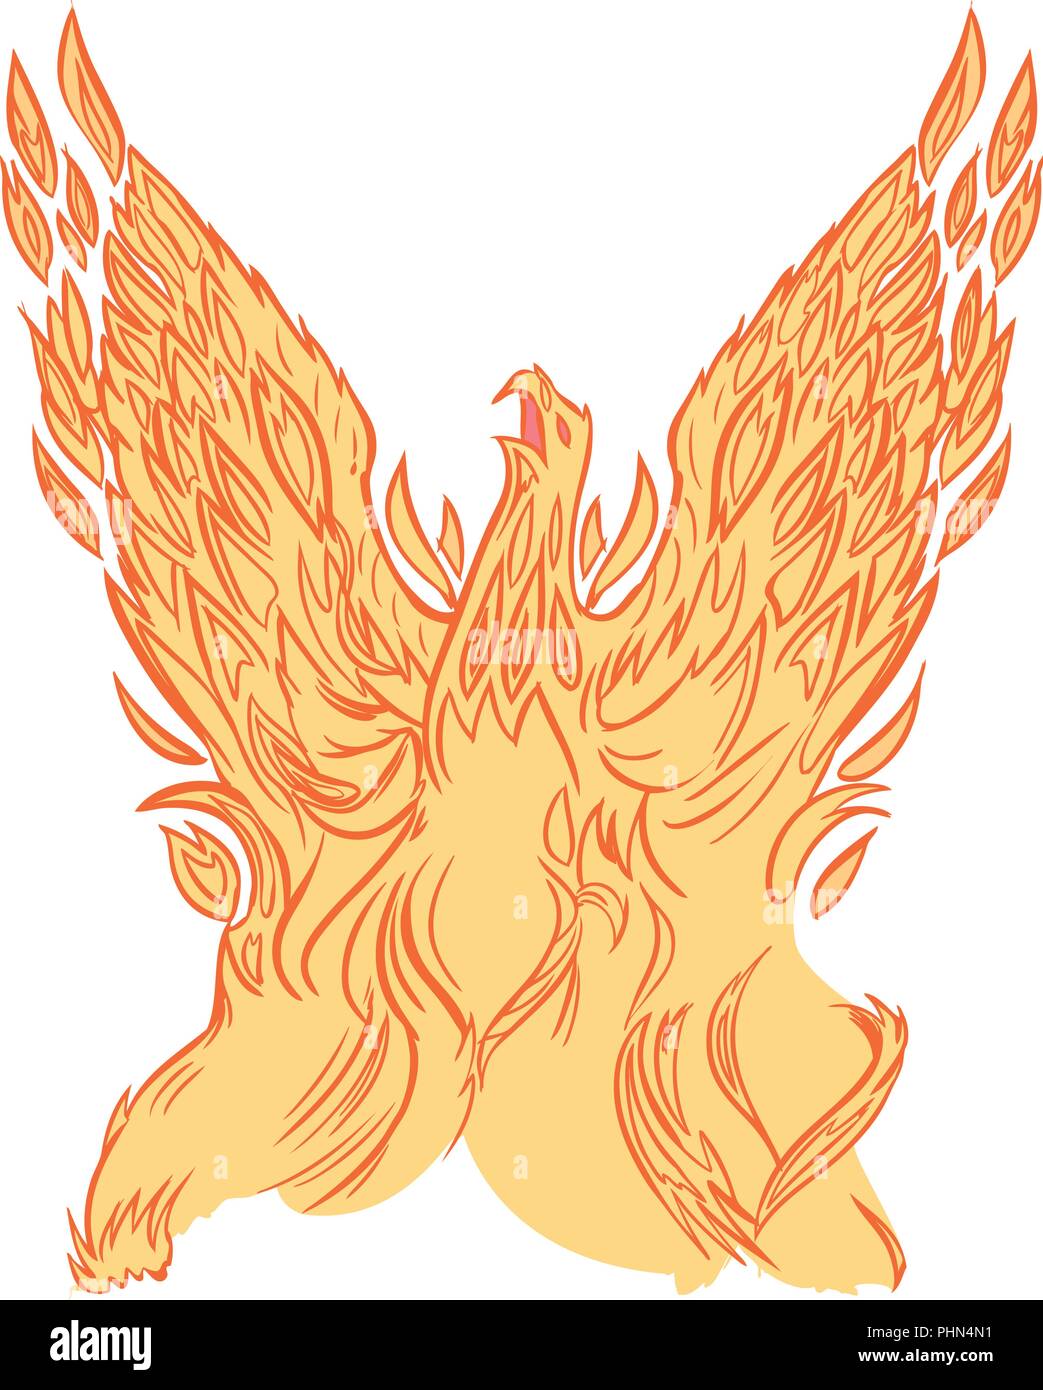 Imágenes prediseñadas vectoriales cartoon ilustración de un ave fénix o firebird de Fuego o llamas levantándose en el aire con alas. Ilustración del Vector